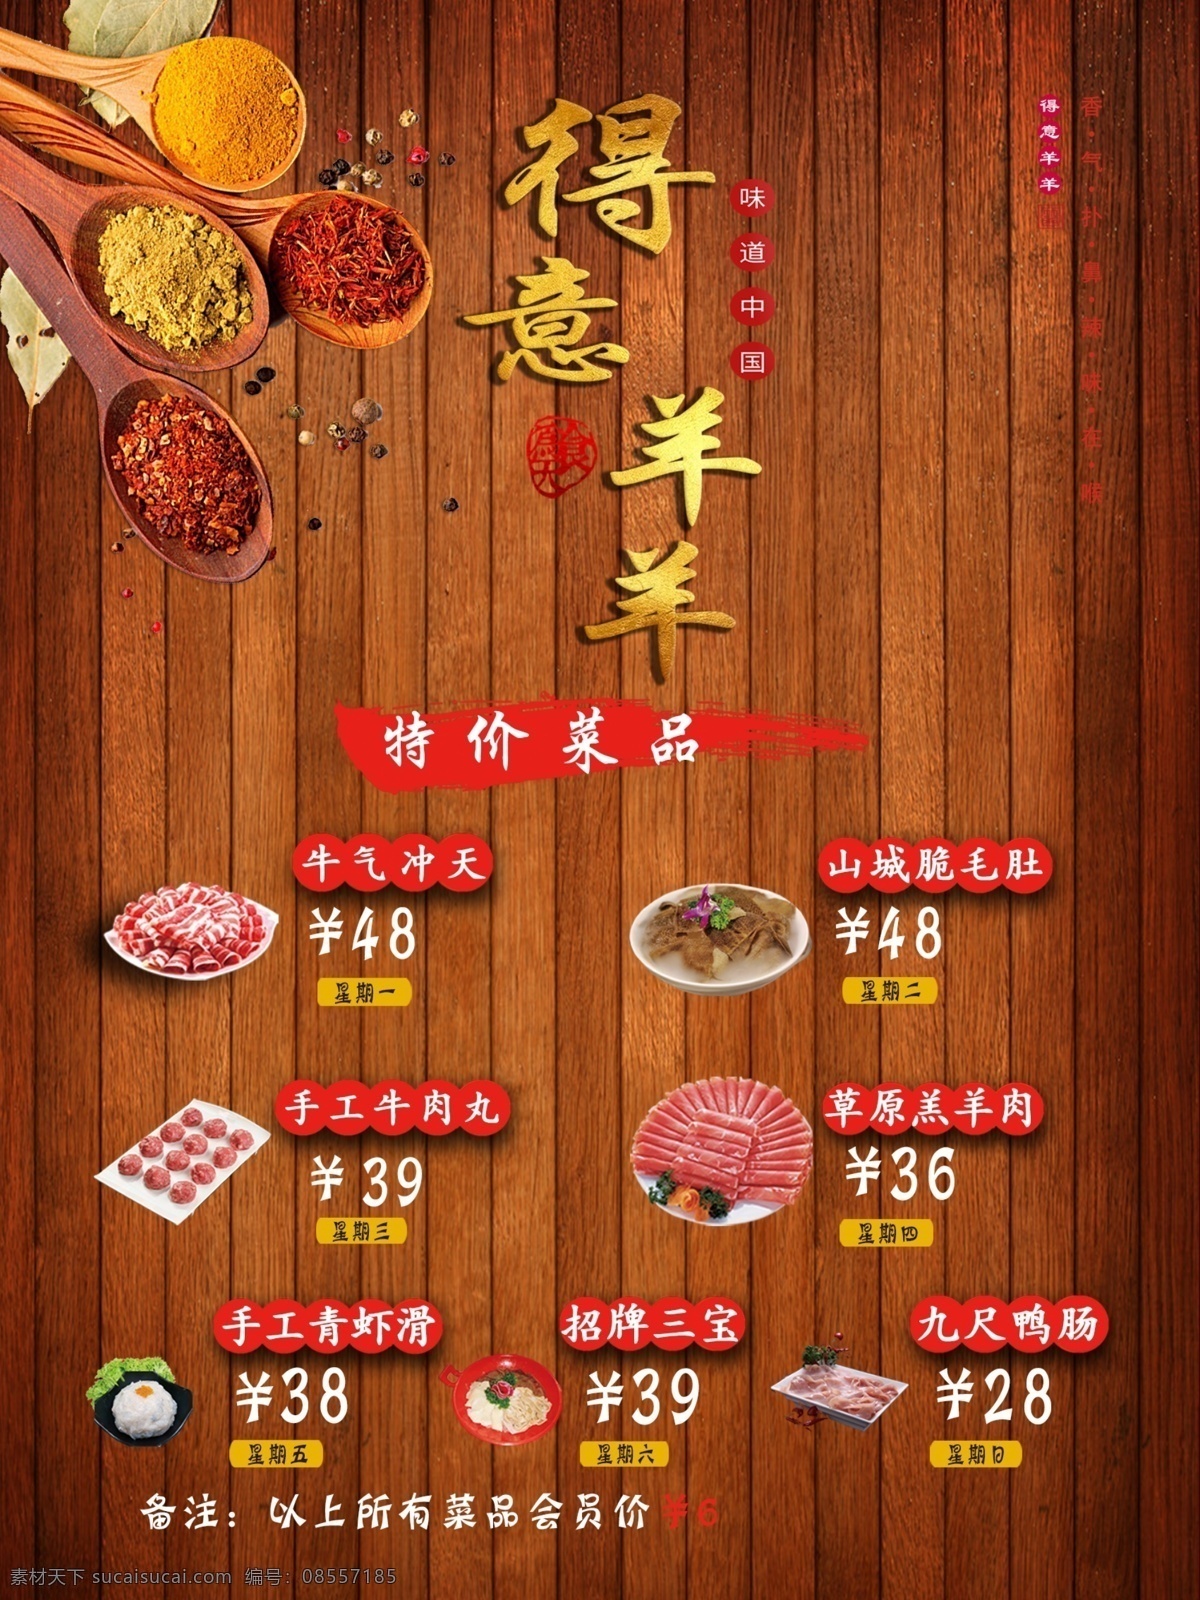 火锅菜品图片 火锅 菜品 特色菜 价格表 菜单 价目表 羊肉 牛肉 冬季 复古 仿古 调味品 辣椒